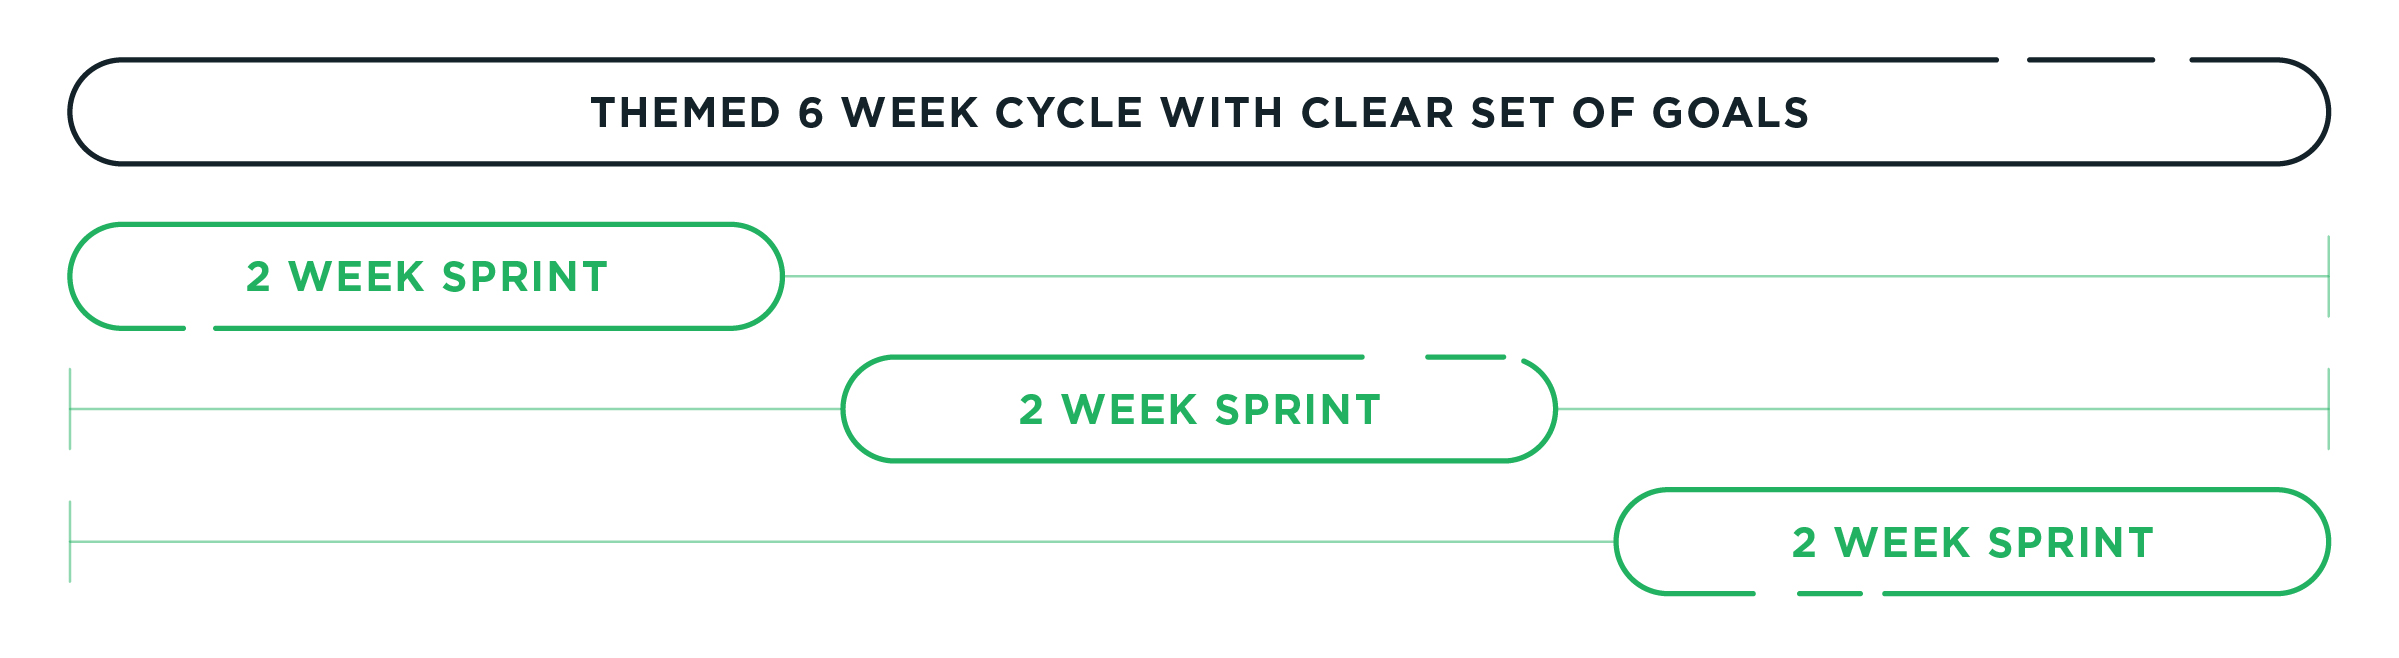 Cycle Gantt Chart@2x.jpg